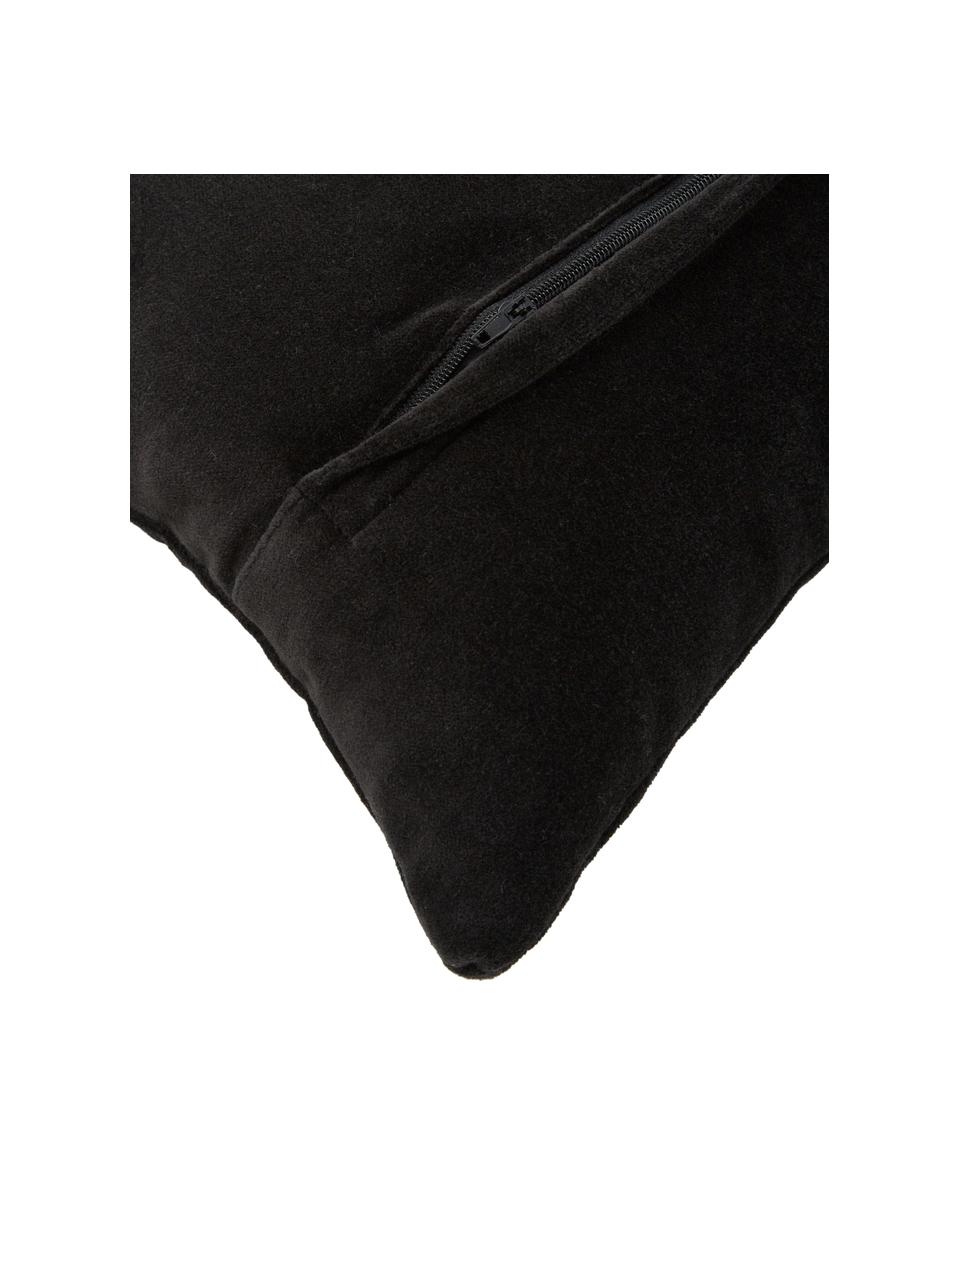 Poduszka z aksamitu z wypełnieniem Embroidered Antler, Tapicerka: 100% aksamit bawełniany, Czarny, beżowy, S 30 x D 50 cm